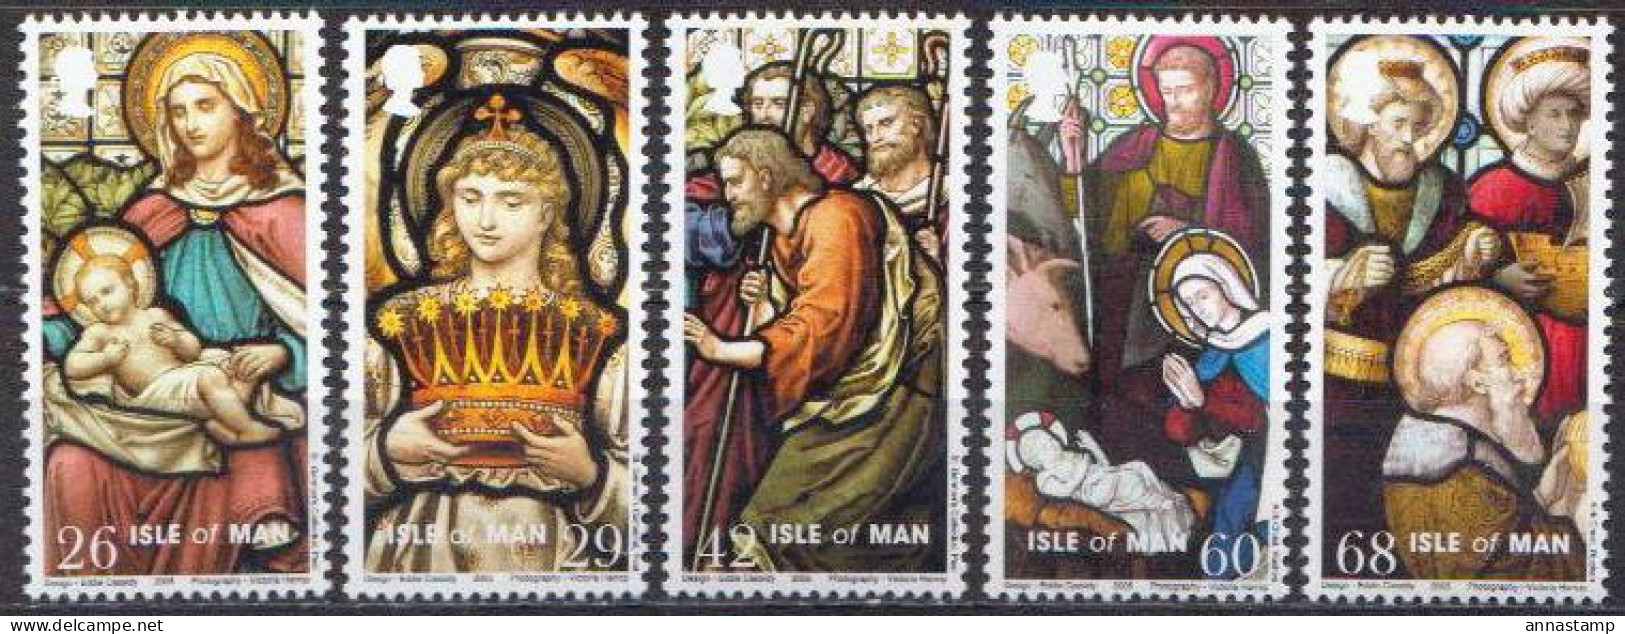 Isle Of Man MNH Stamps - Christmas